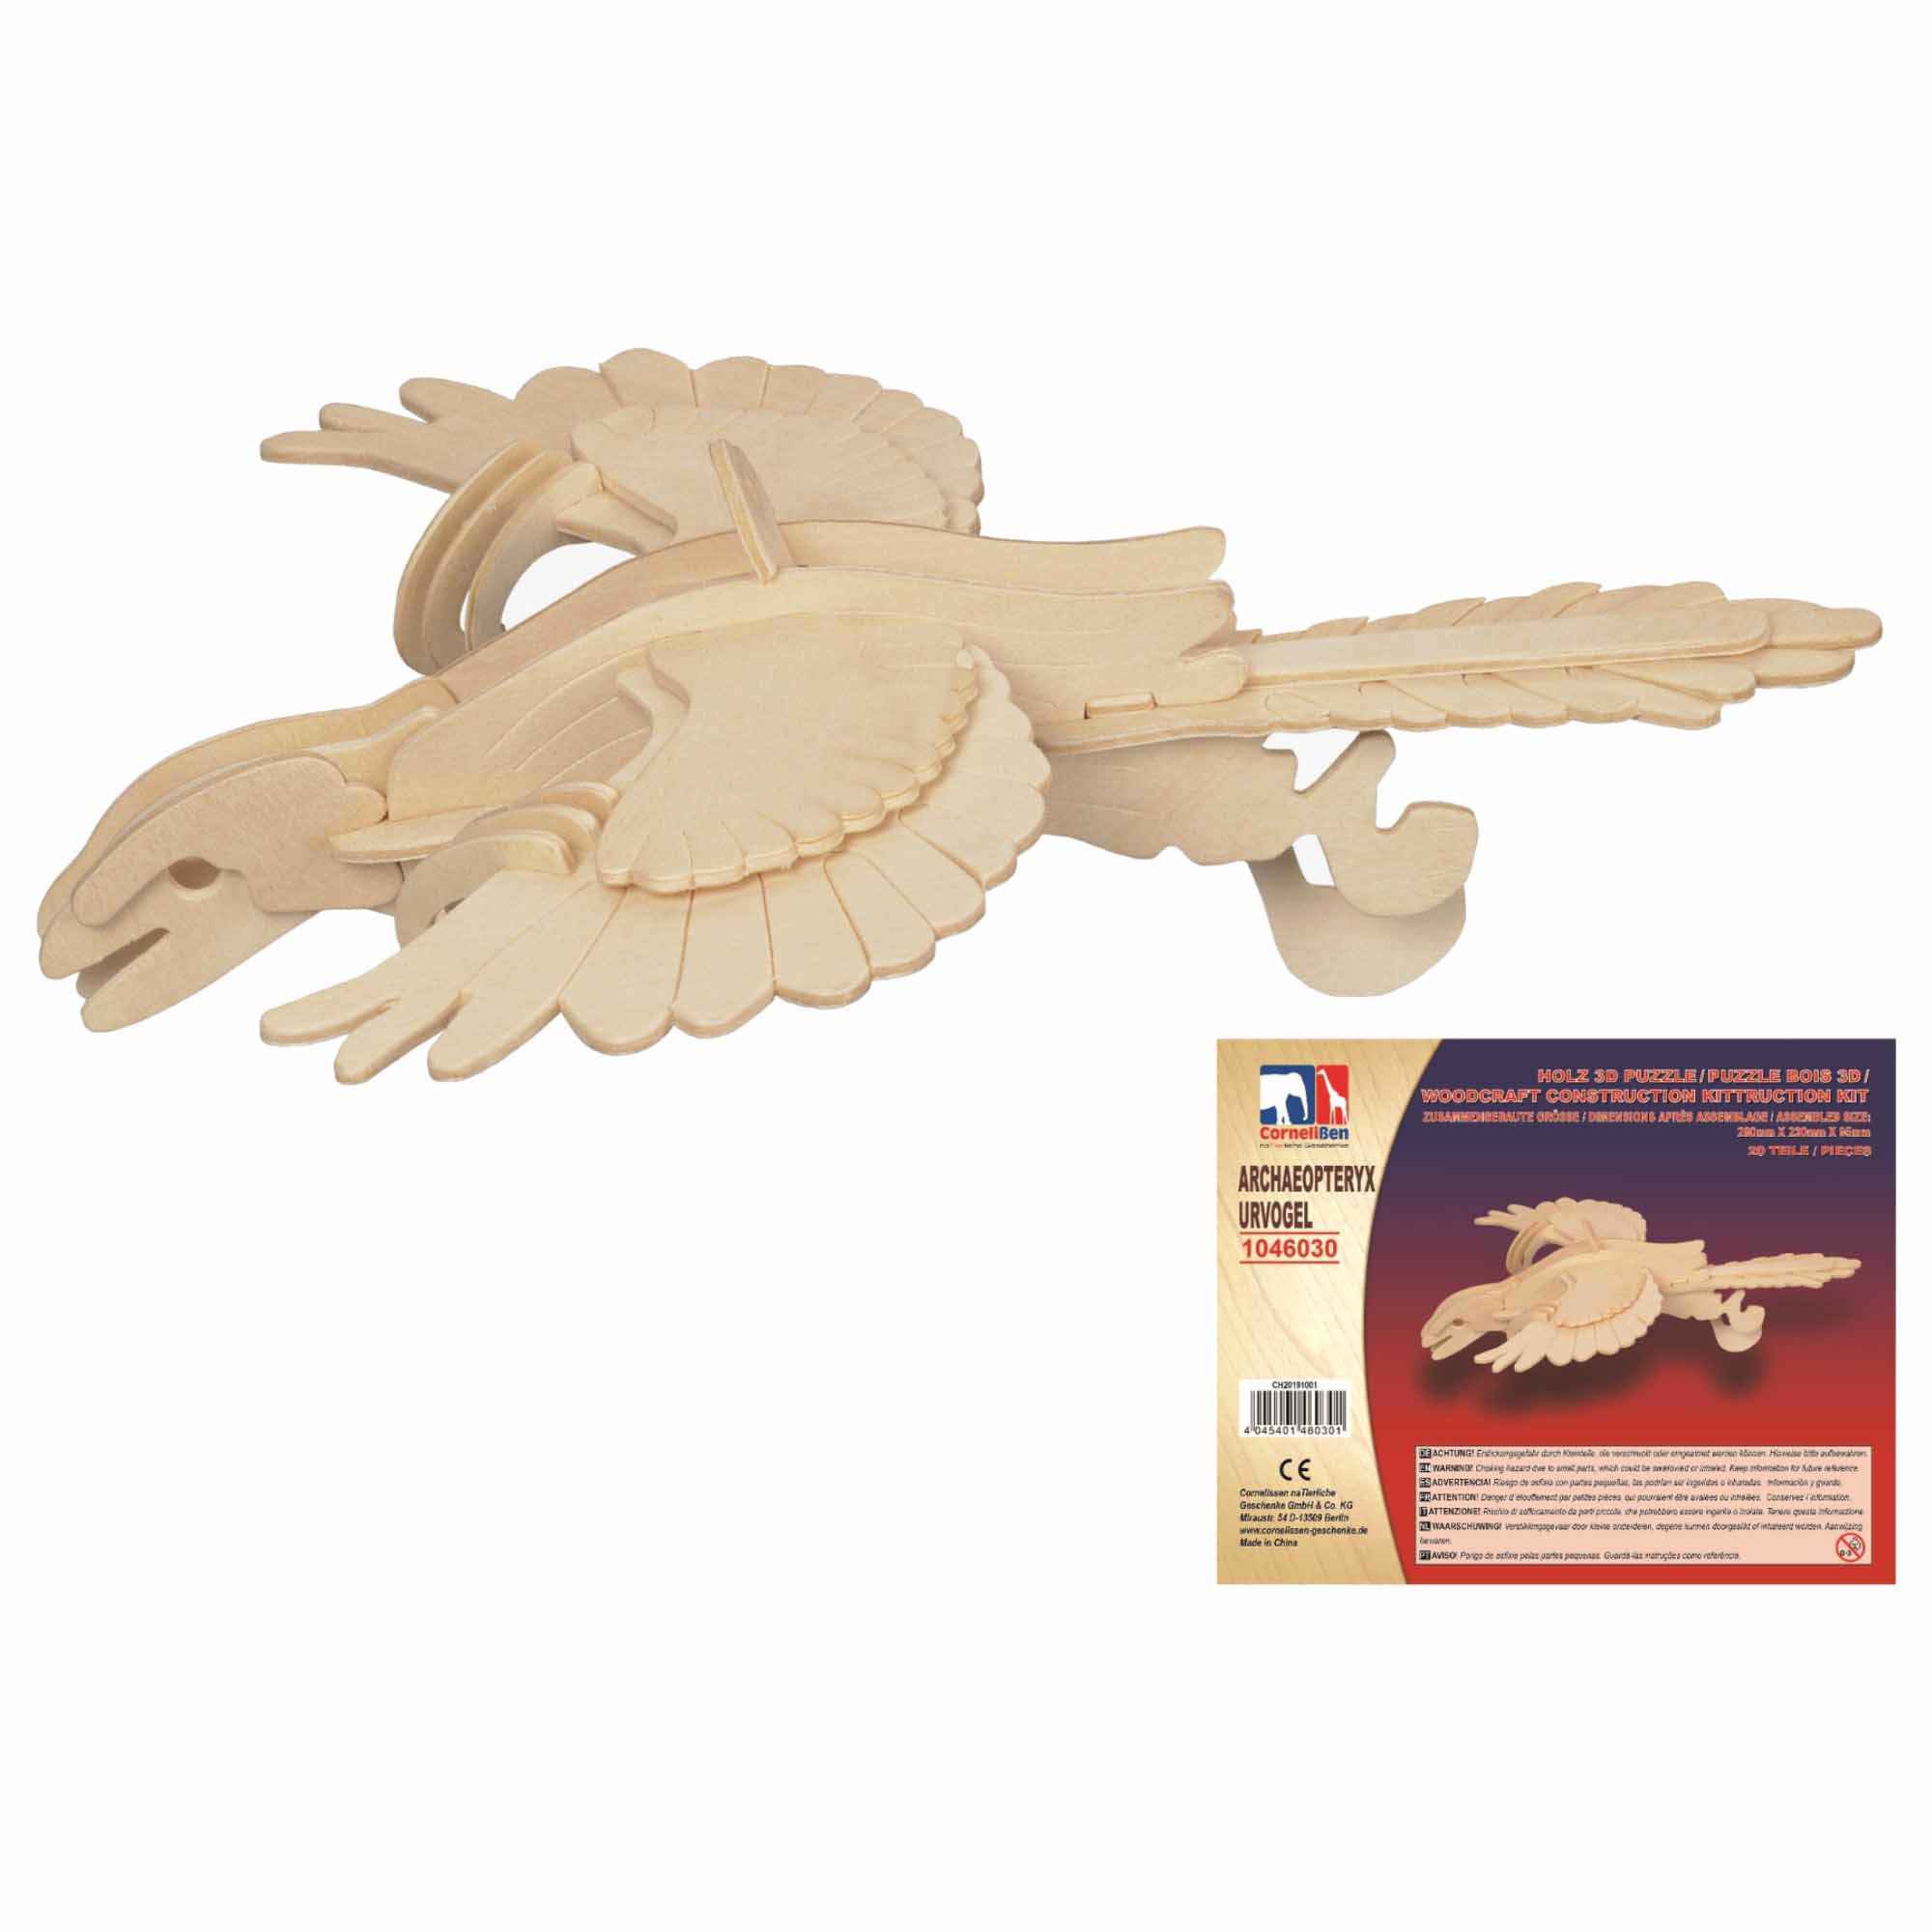 Houten dieren 3d puzzel Archaeopteryx dinosaurus bouwpakket 28 cm -